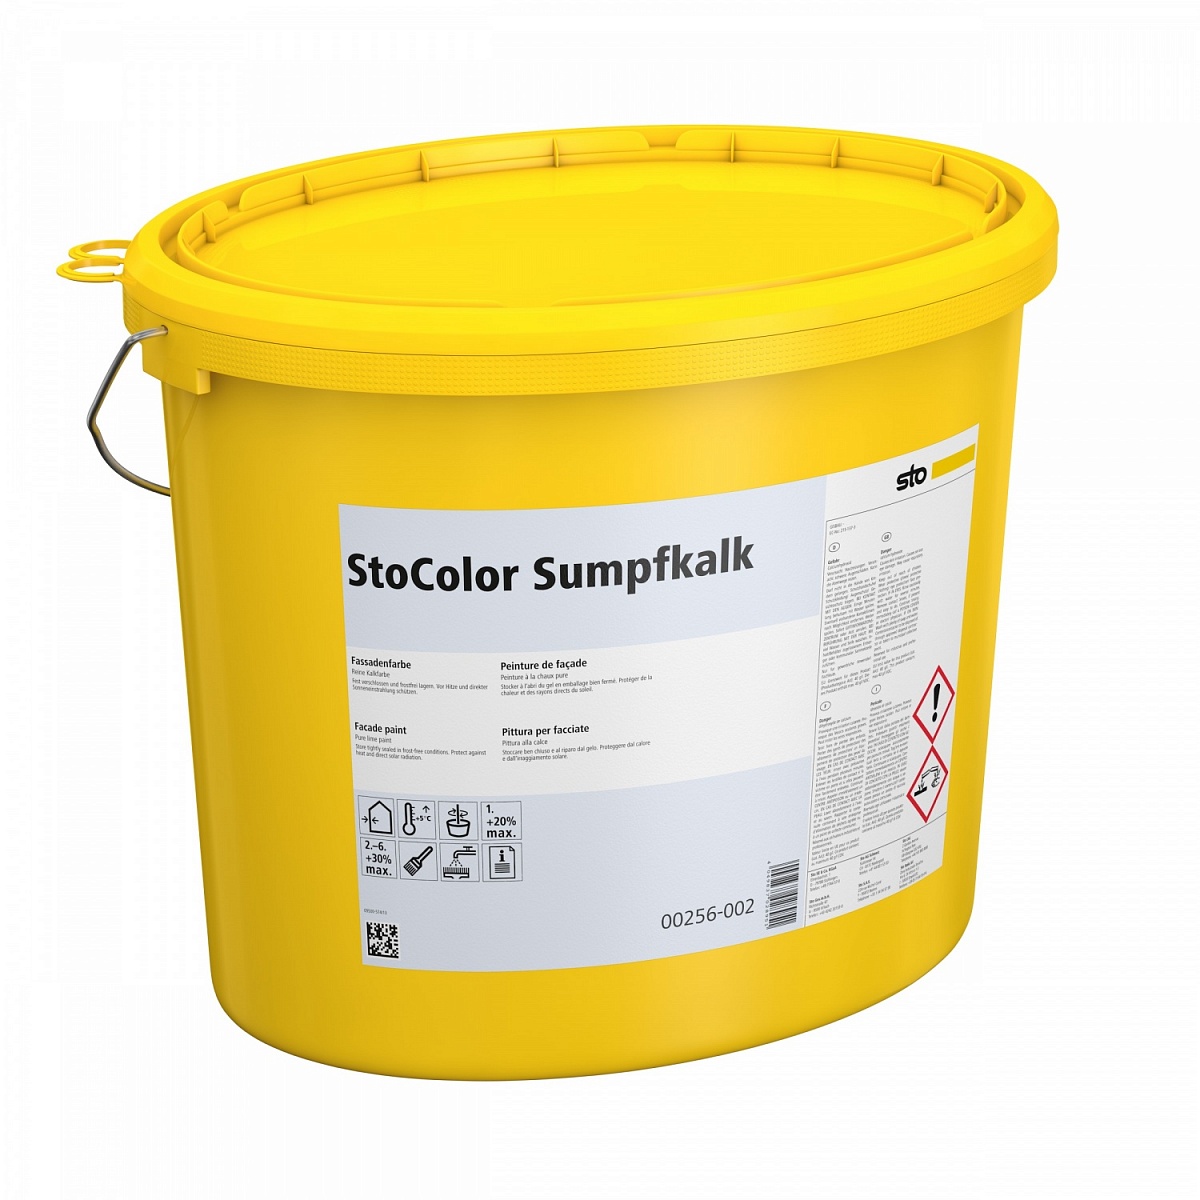 Купить известковая краска stocolor sumpfkalk (сто) от официального дилера STO